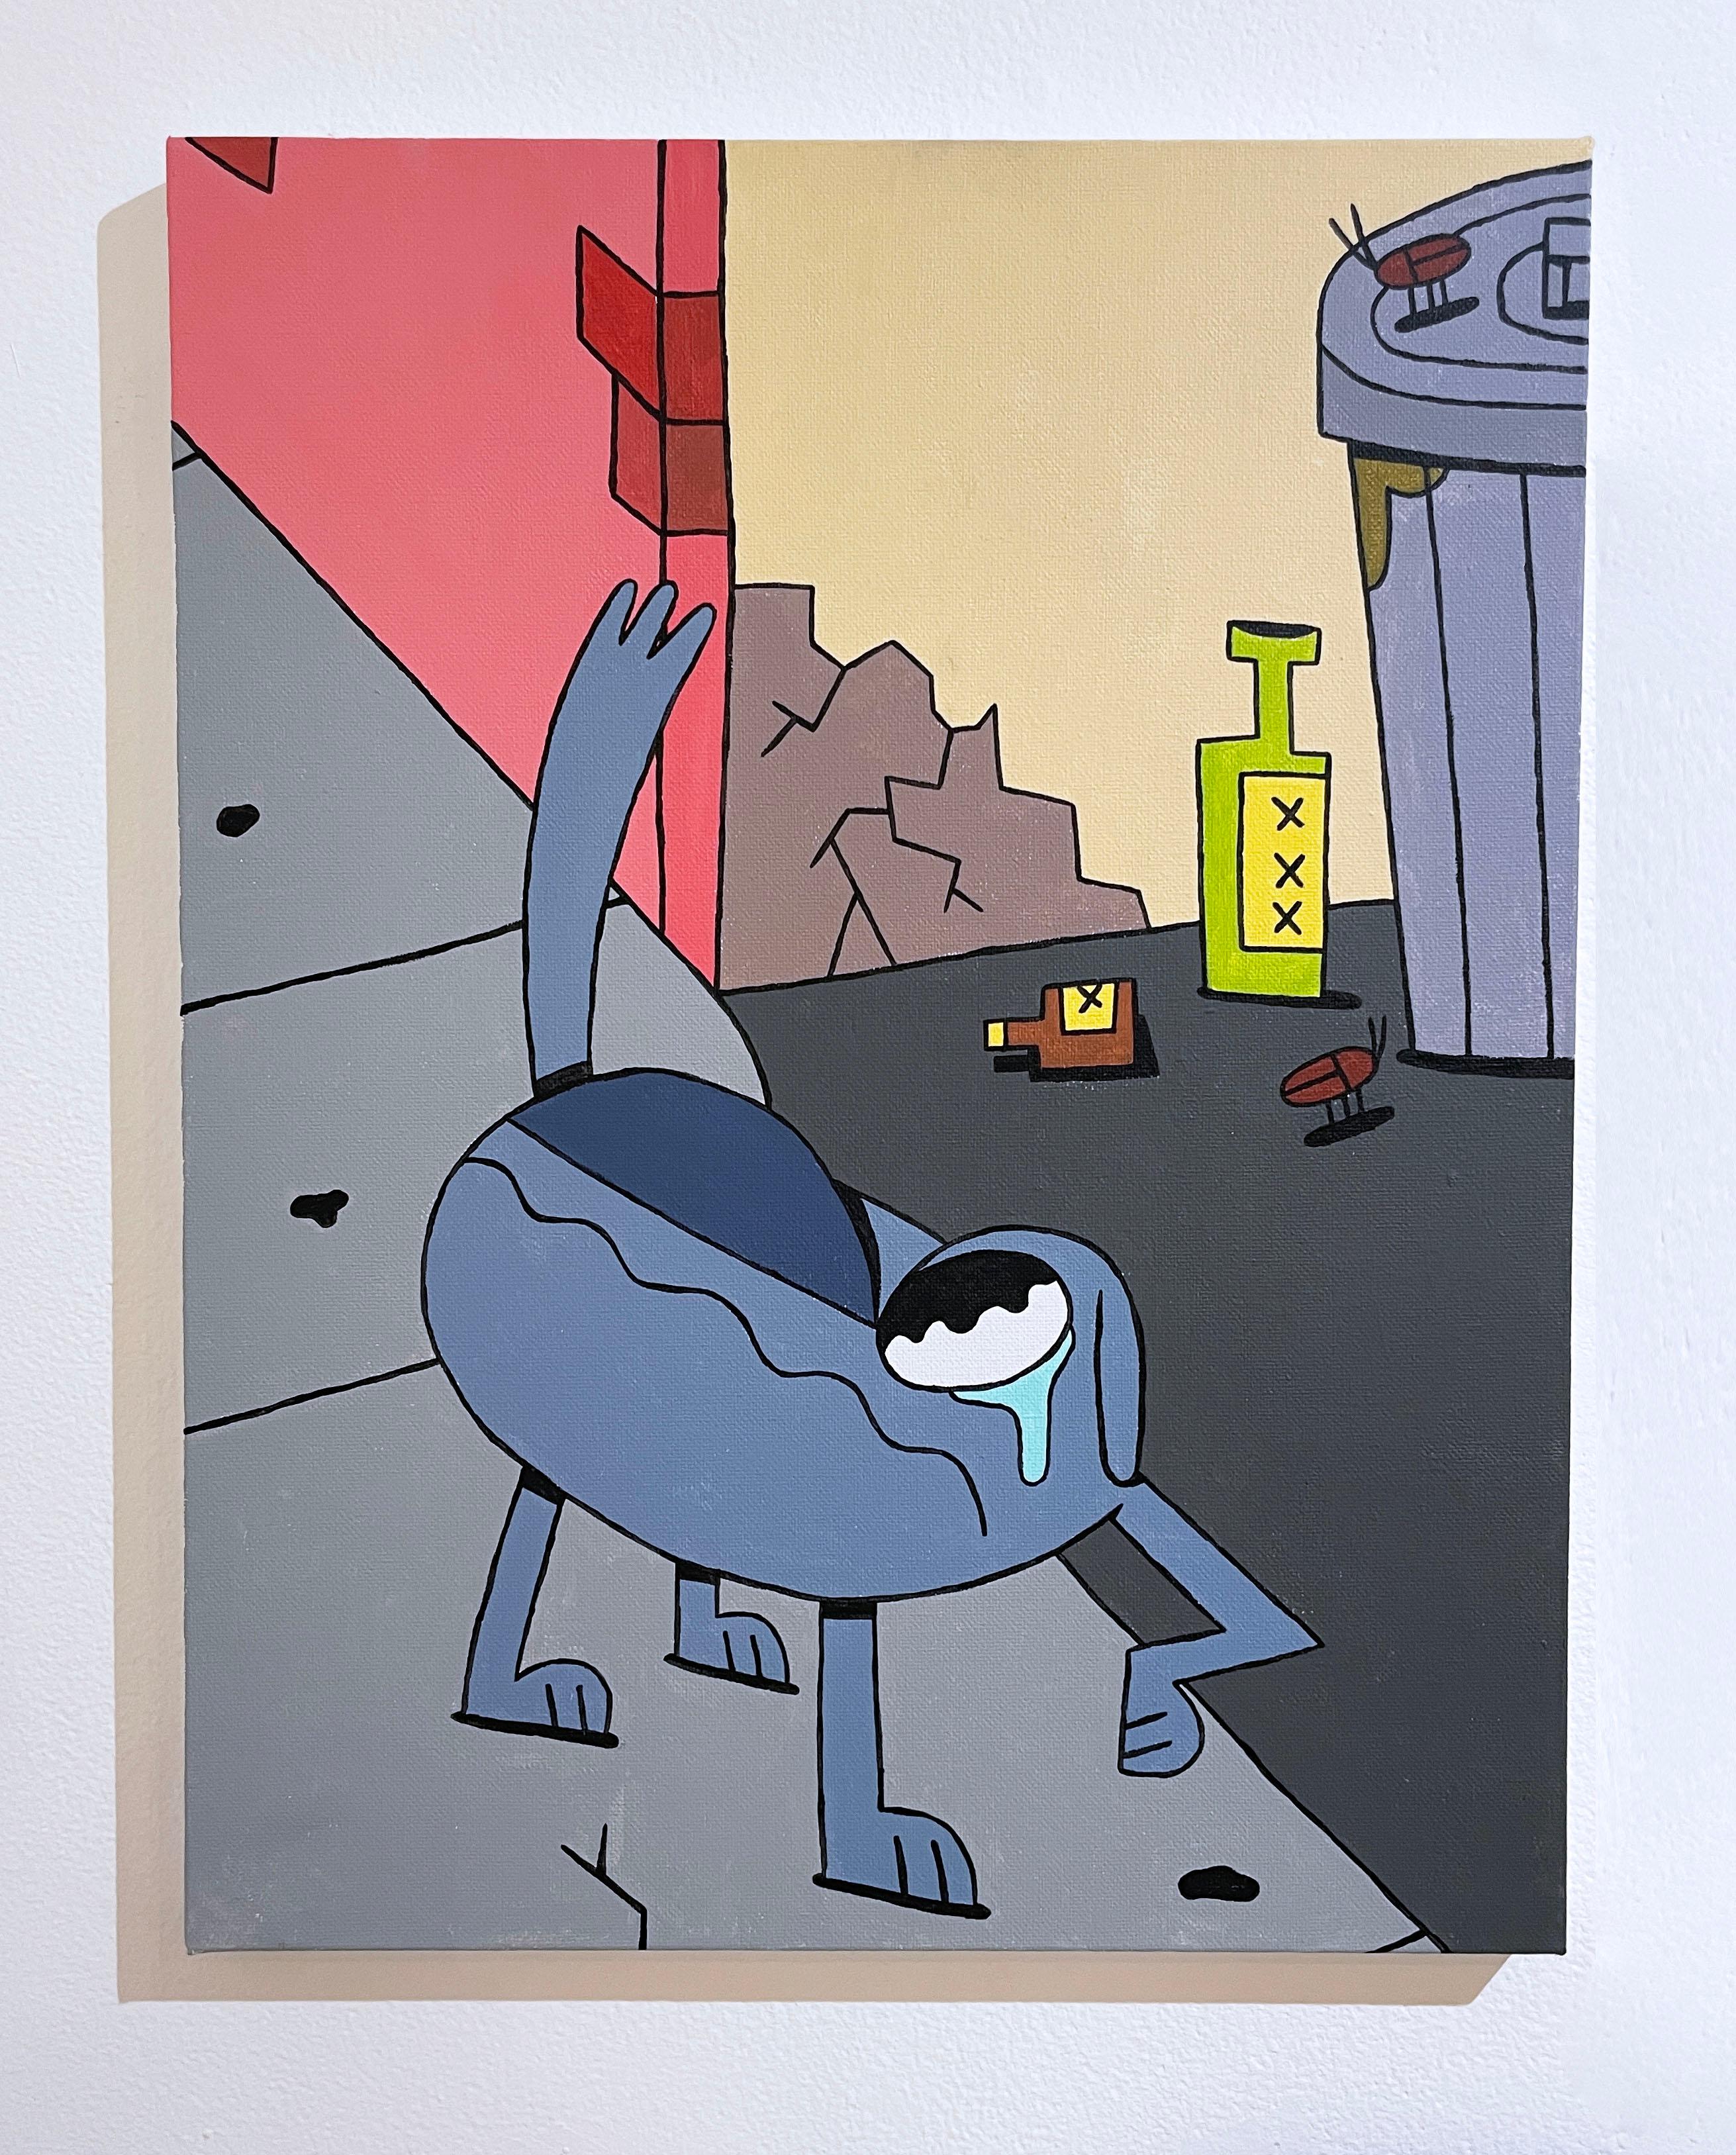 Teary Eyed von BARC, der Hund, Pop-Comic-Buch, Tierfigur, Cartoon-Stil Leinwand – Painting von BARC the dog